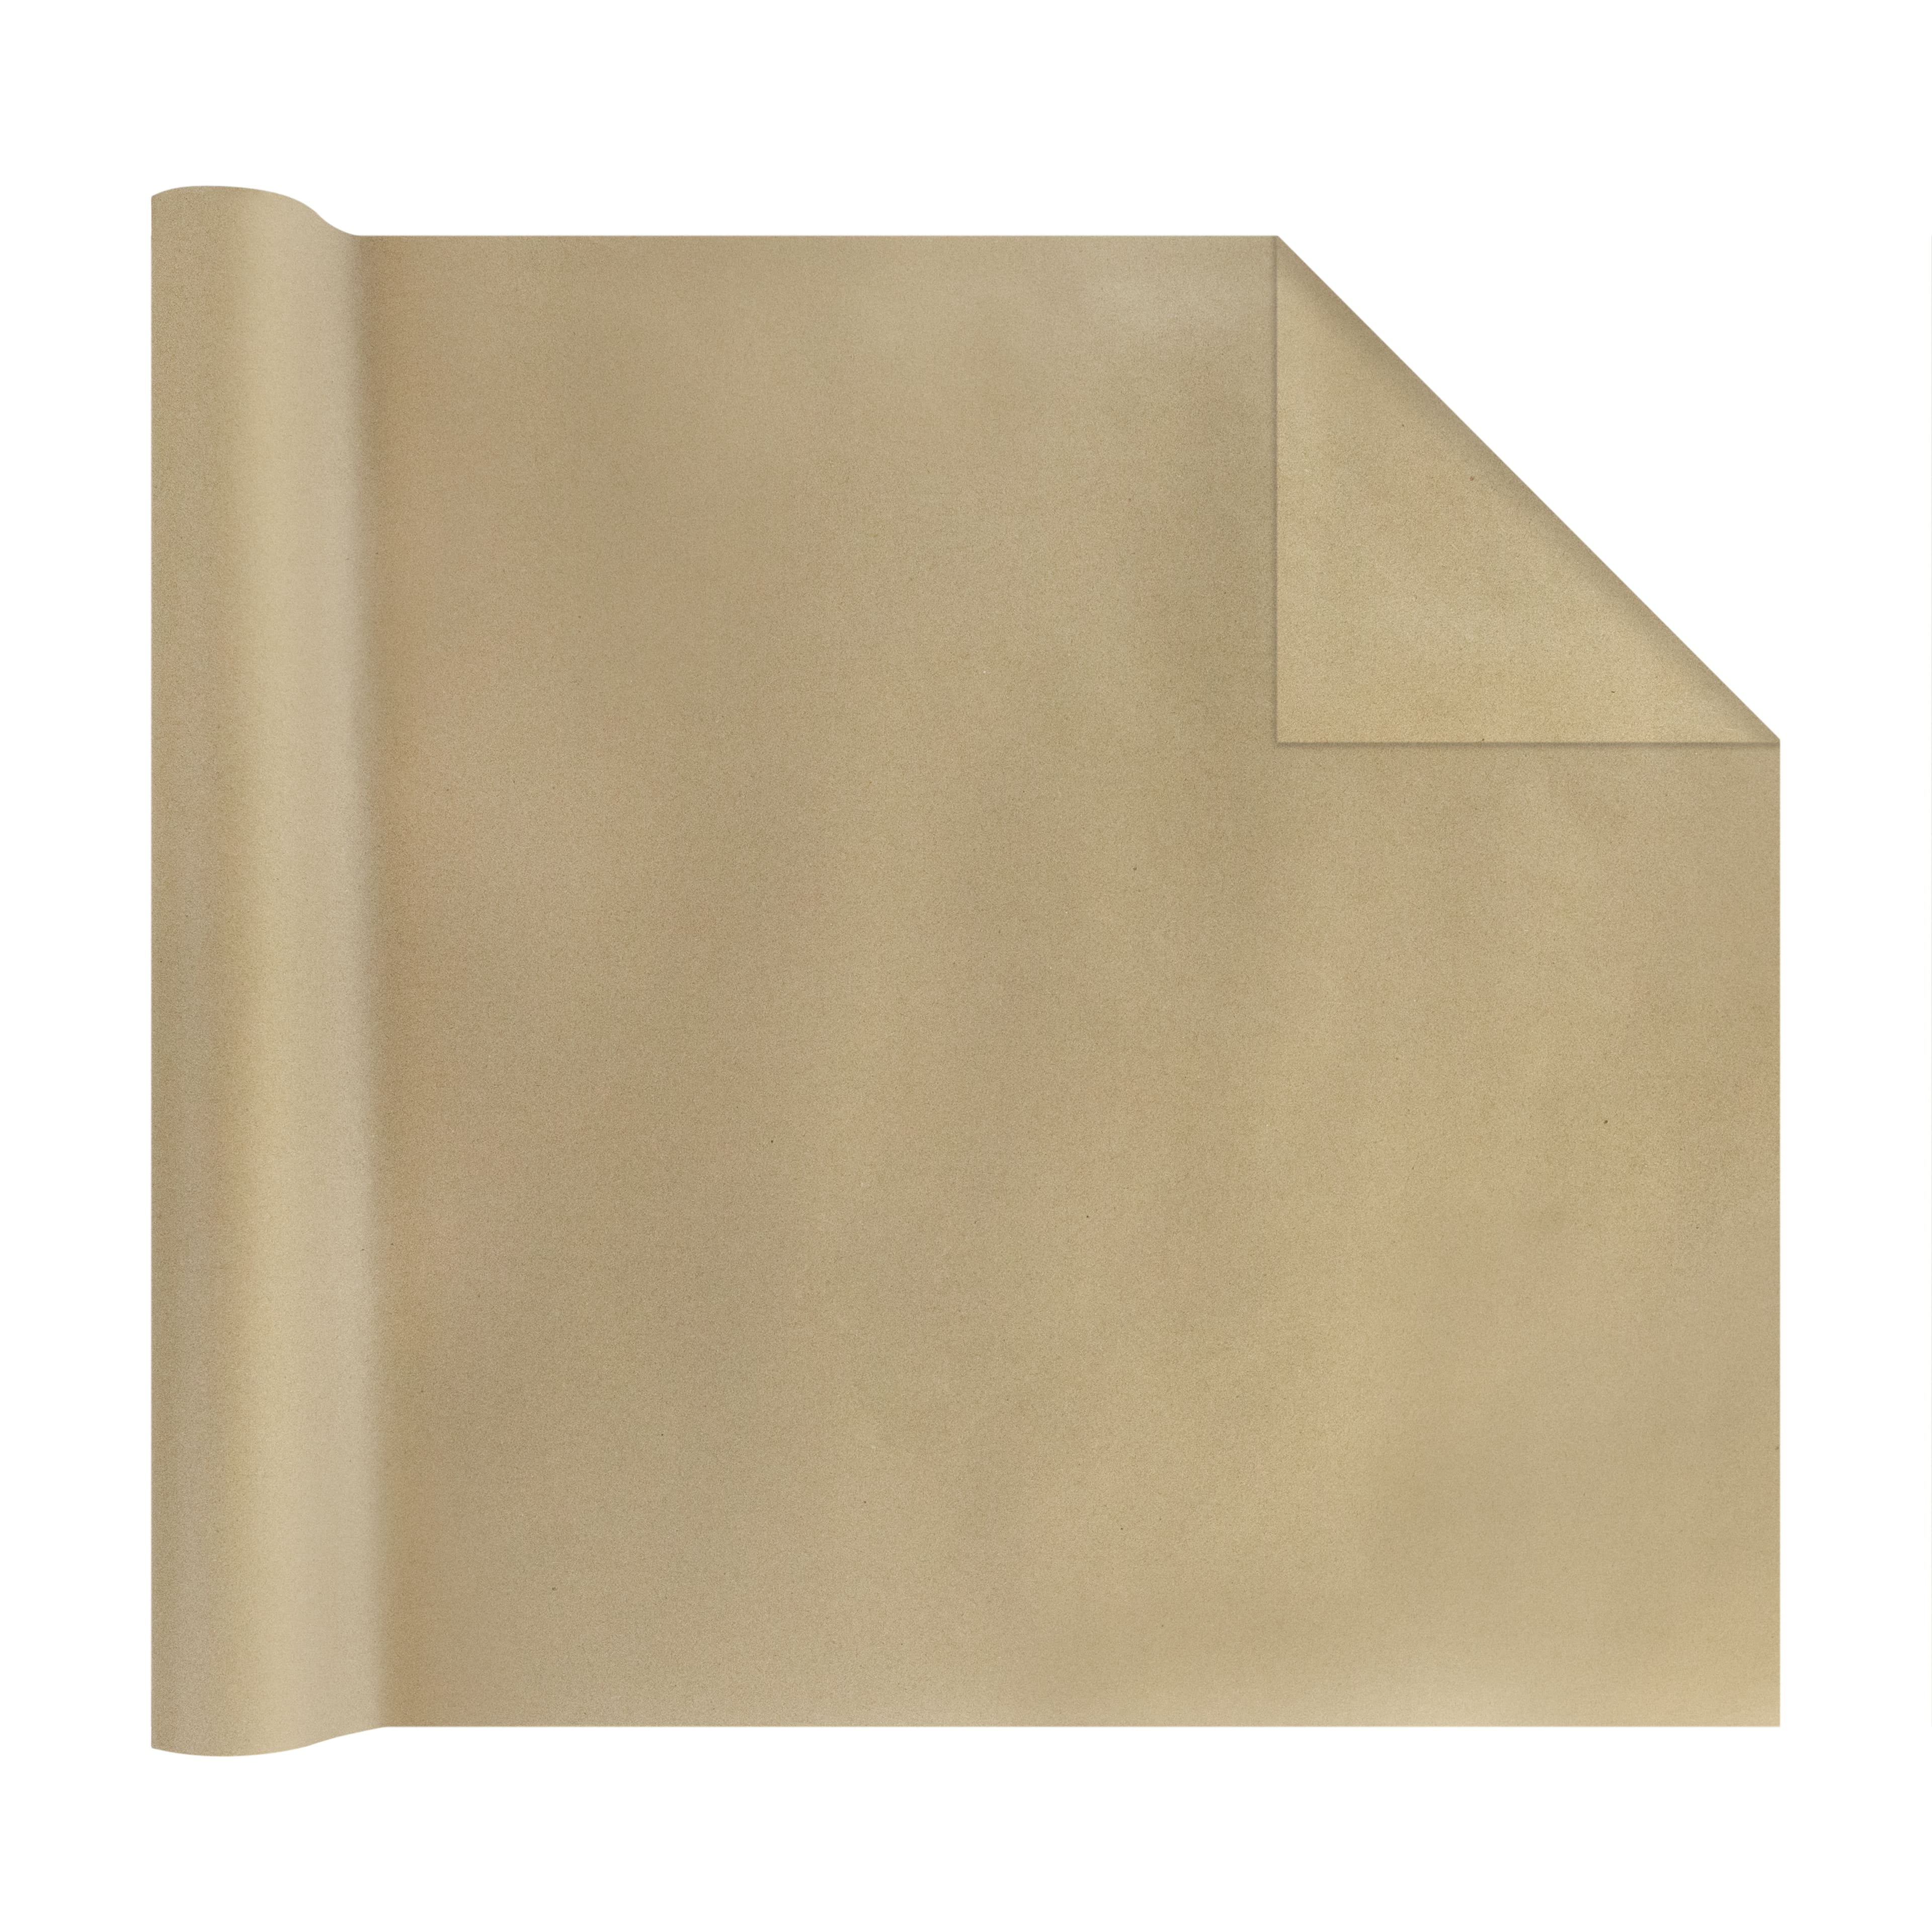 Pacon Lightweight Kraft Paper Roll, 48 inch x 200 feet, Natural, 1